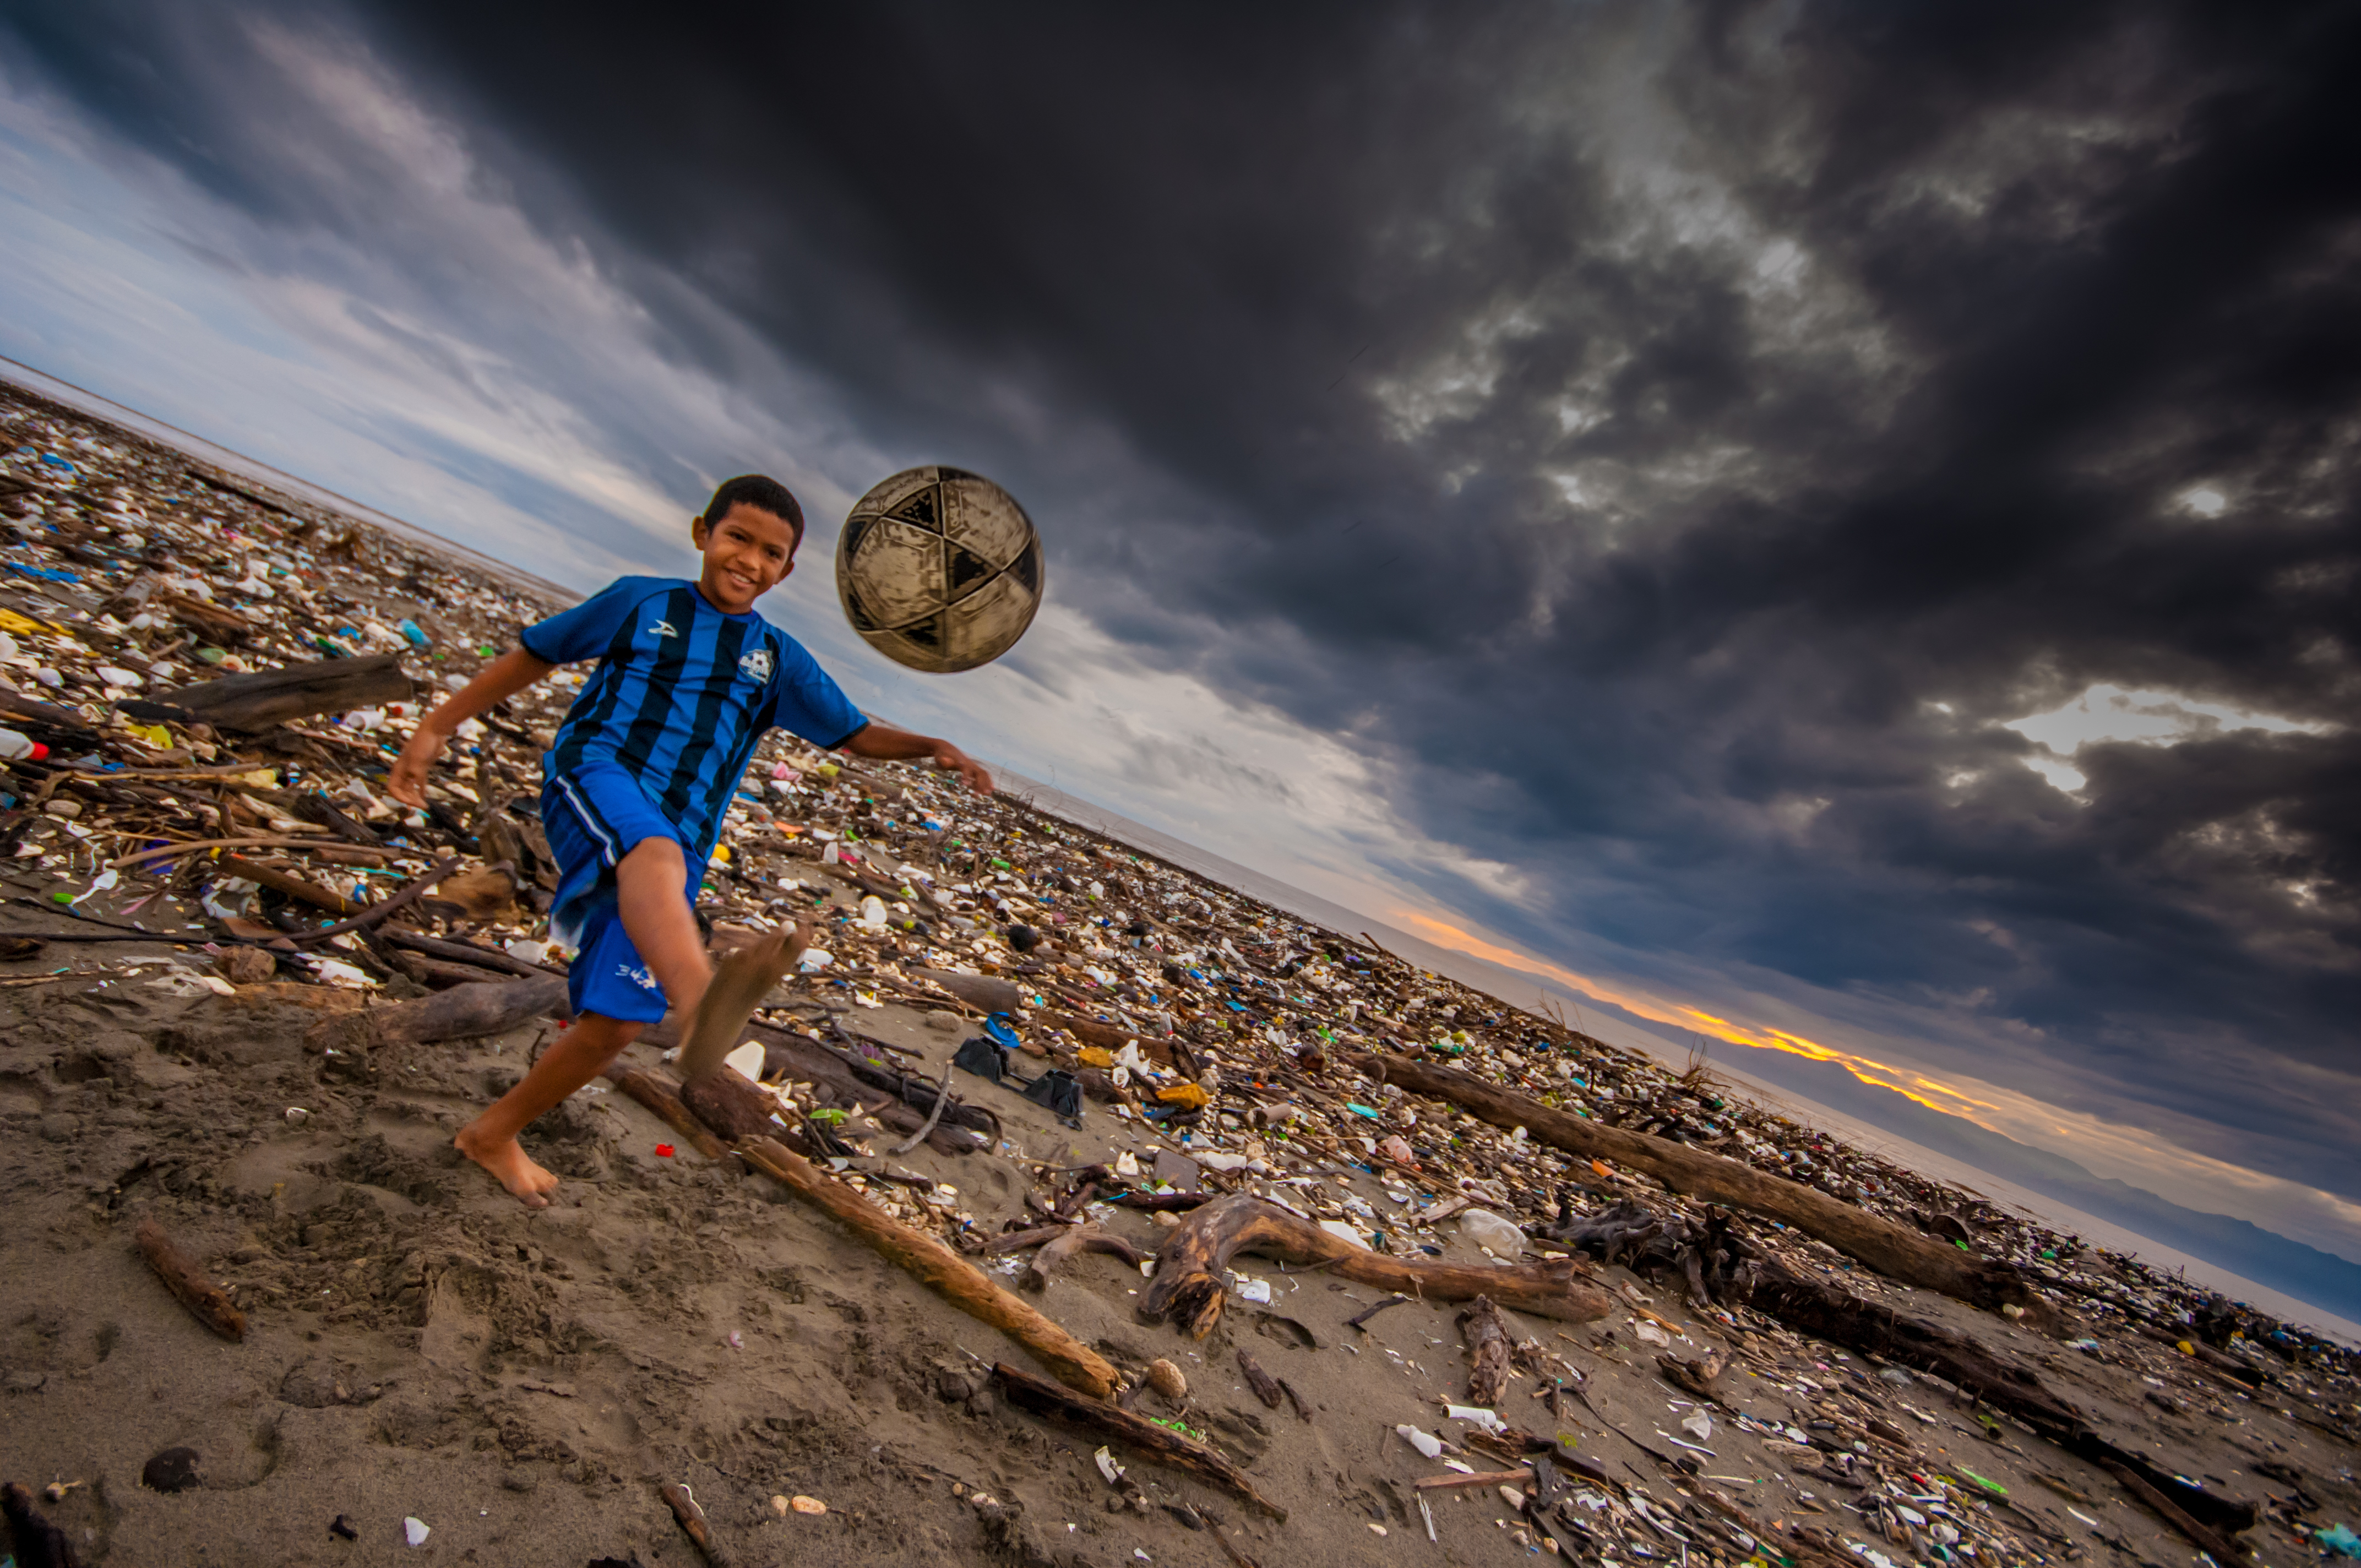 La contaminación por plástico causa preocupación a varios sectores de la sociedad. (Foto Prensa Libre: Cortesía Sergio Izquierdo)